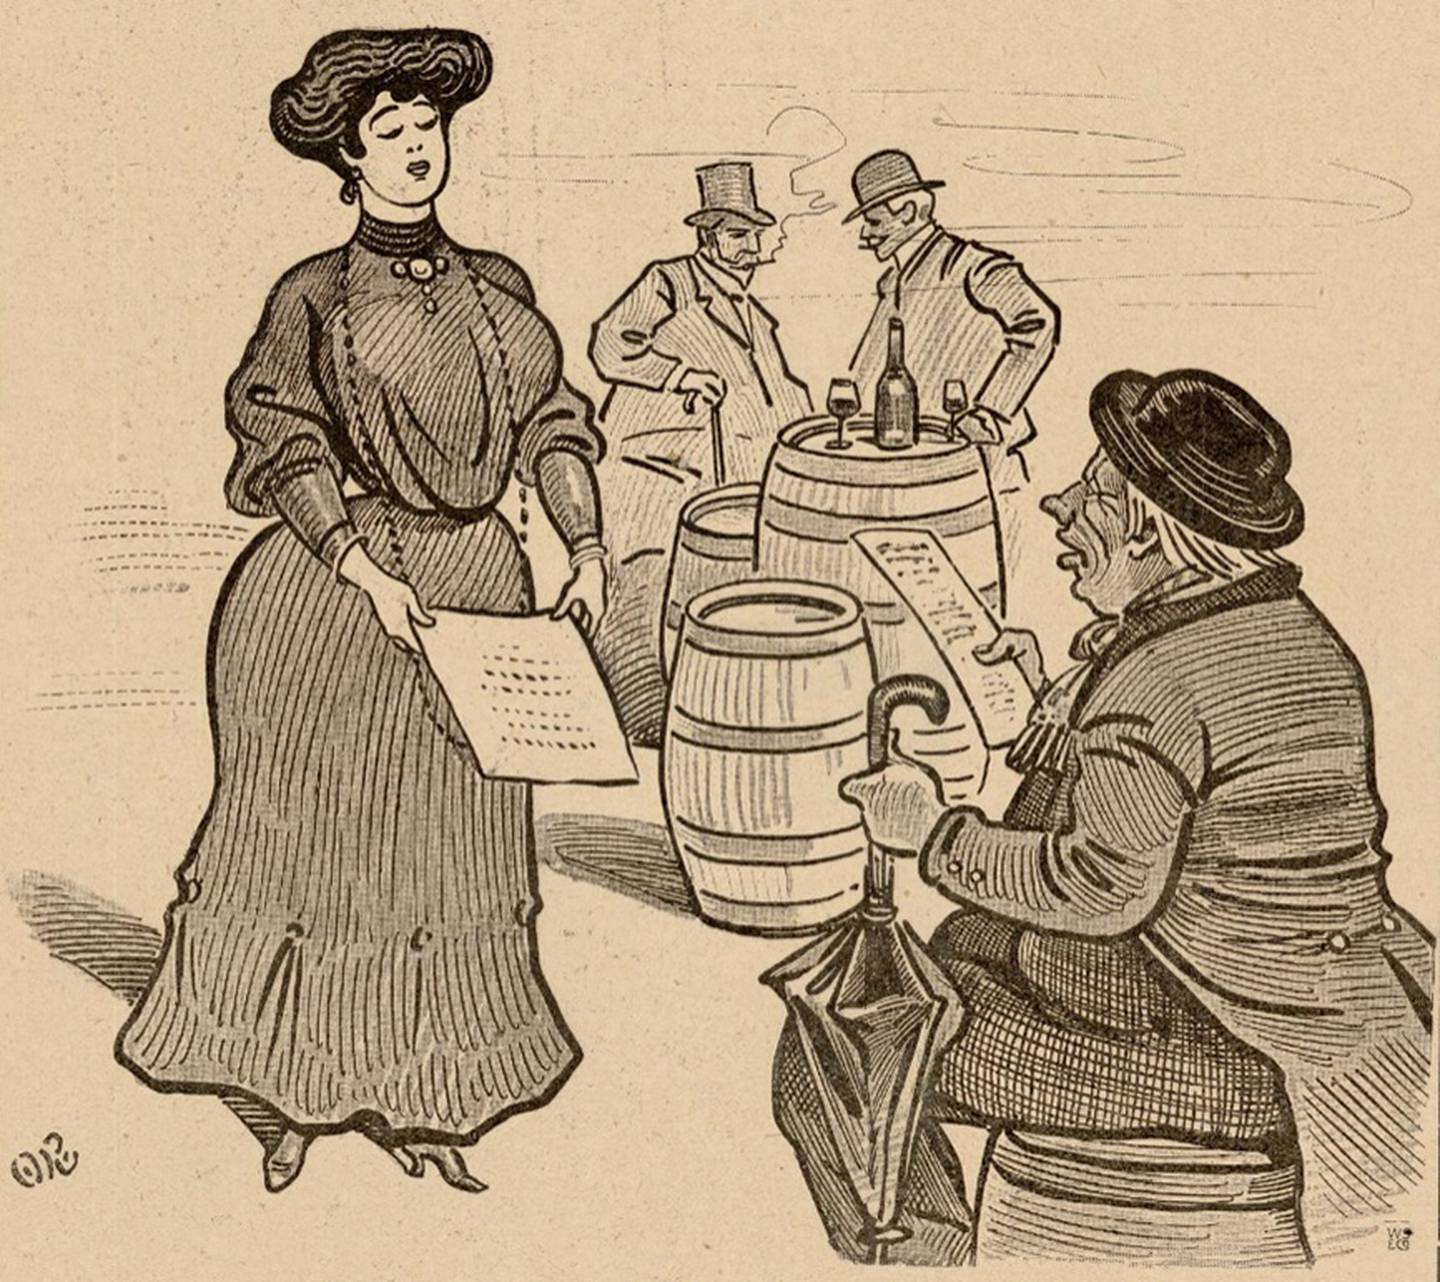 Disegno di un uomo con cappello seduto su una botte.  La ragazza in vestito e cappello viene fornita con il menu.  Sullo sfondo due uomini fumano e bevono.